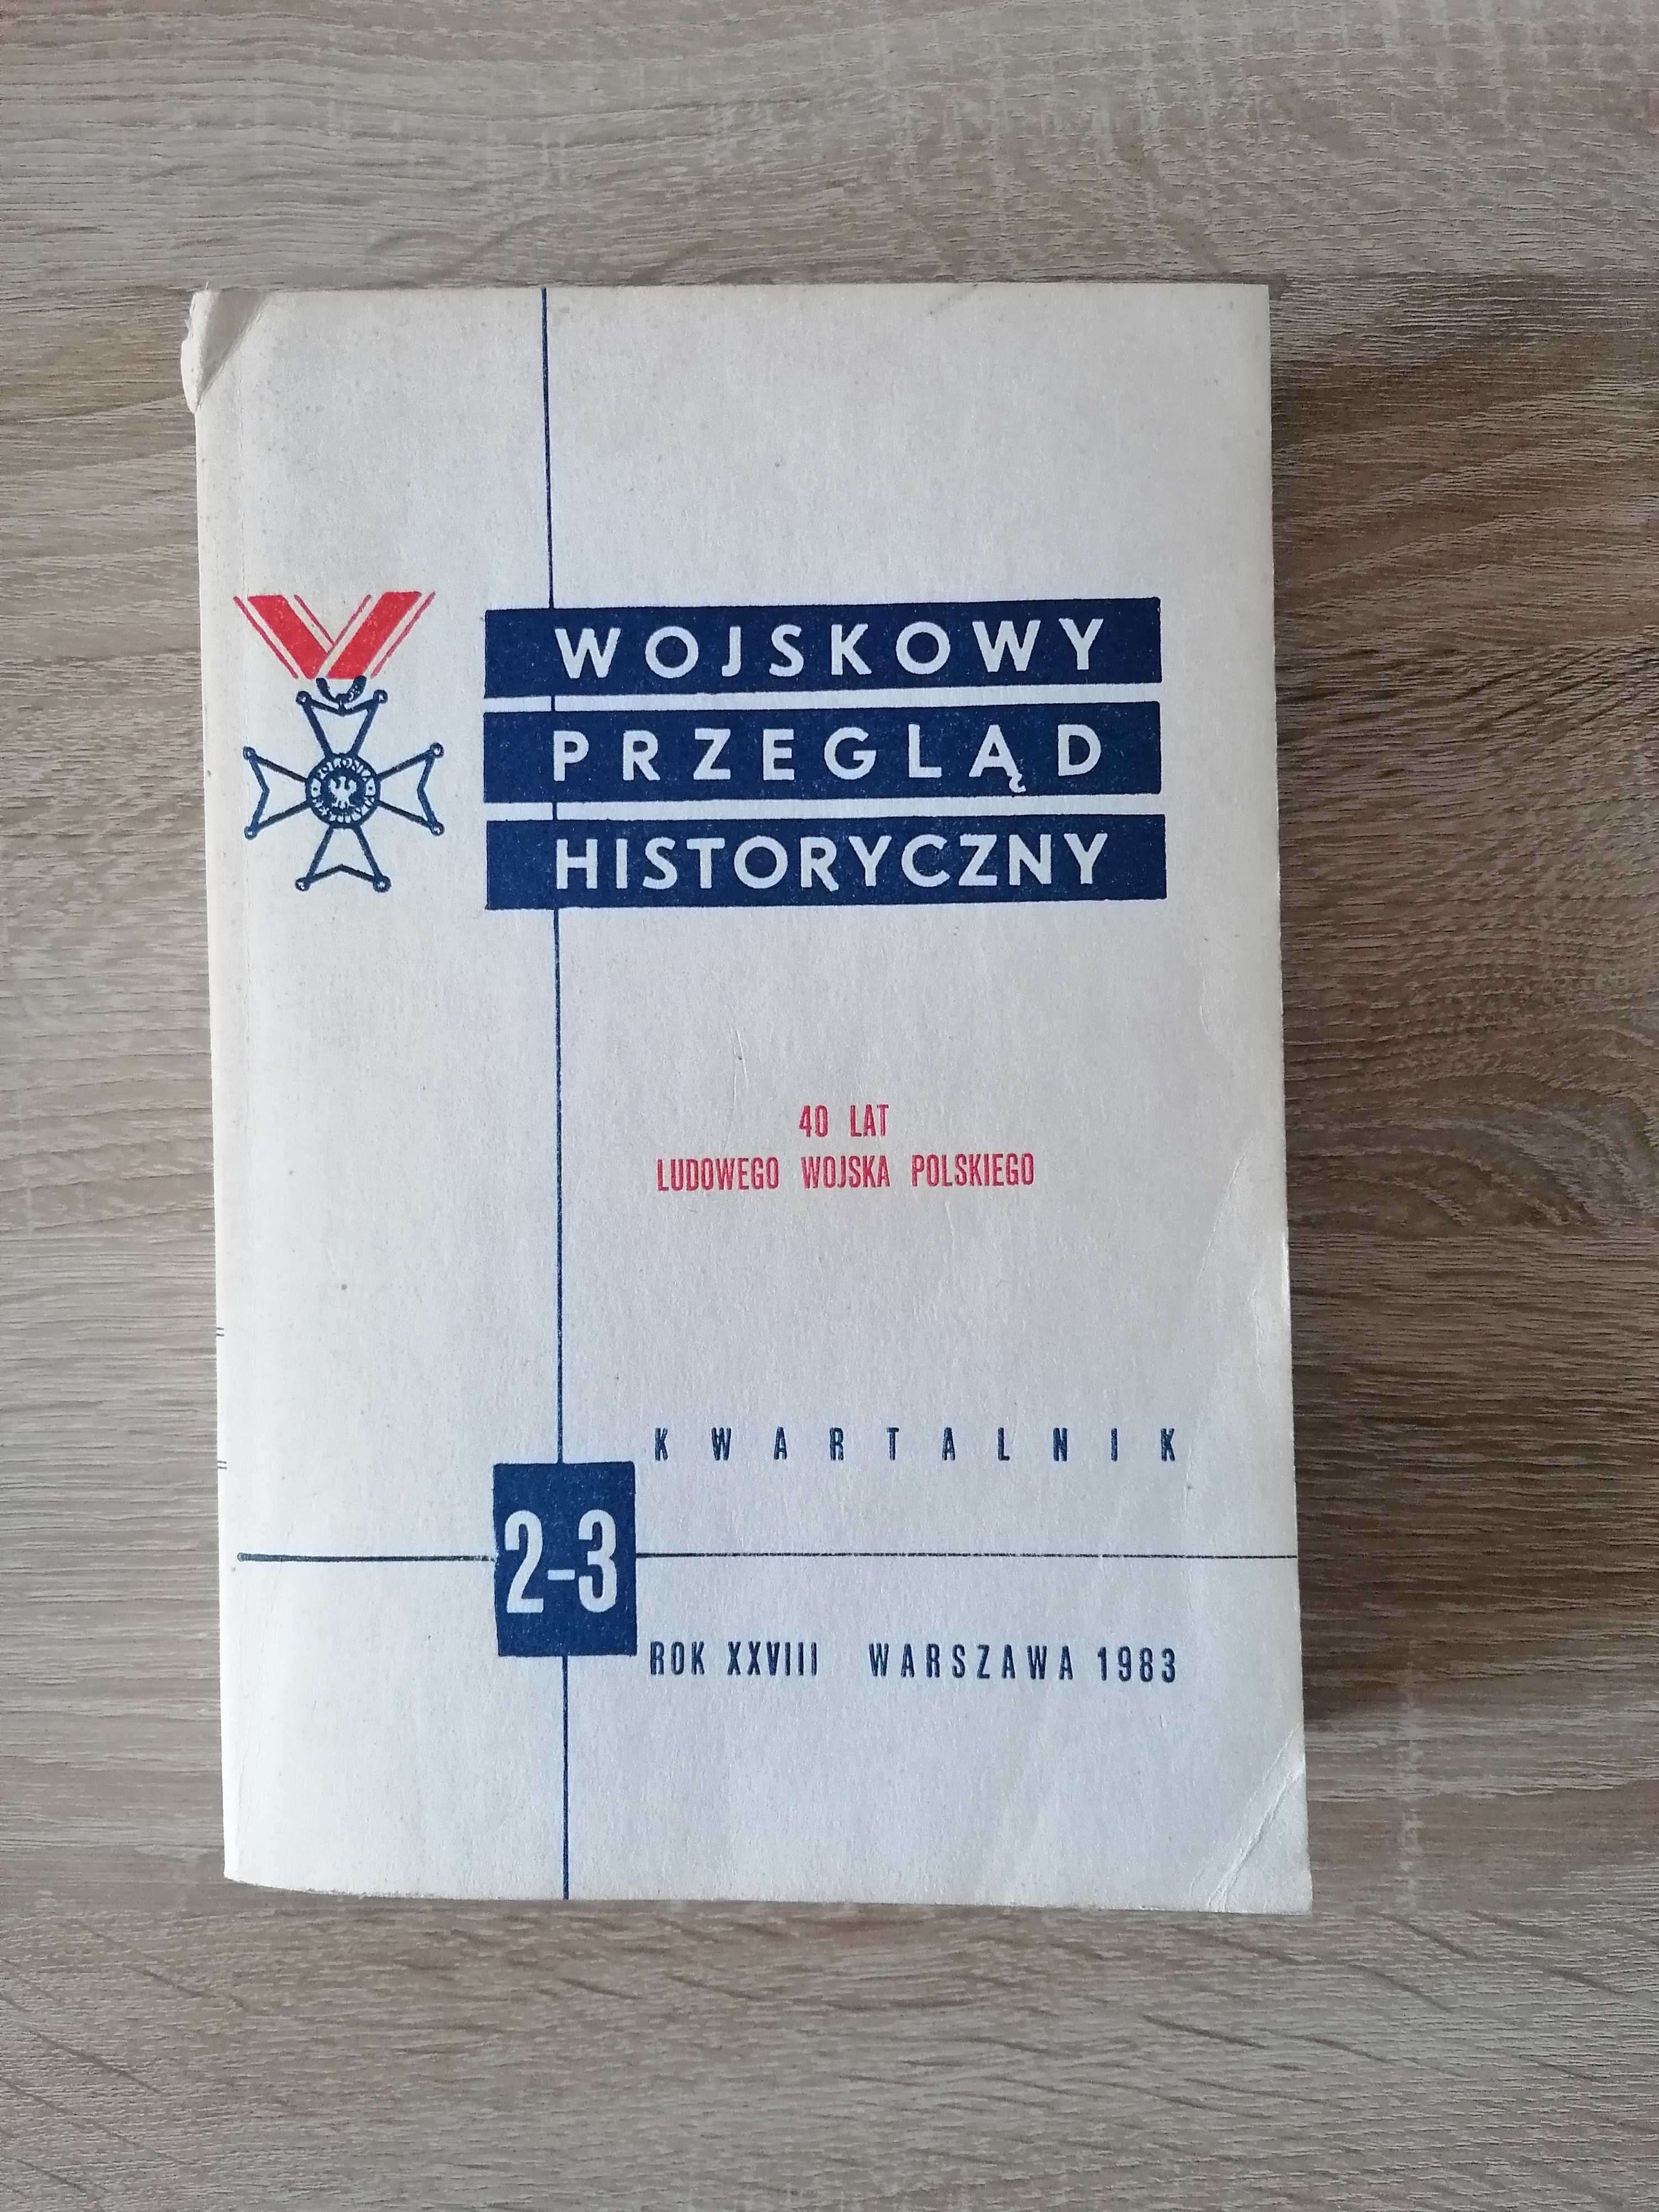 Wojskowy przegląd historyczny kwartalnik 2-3